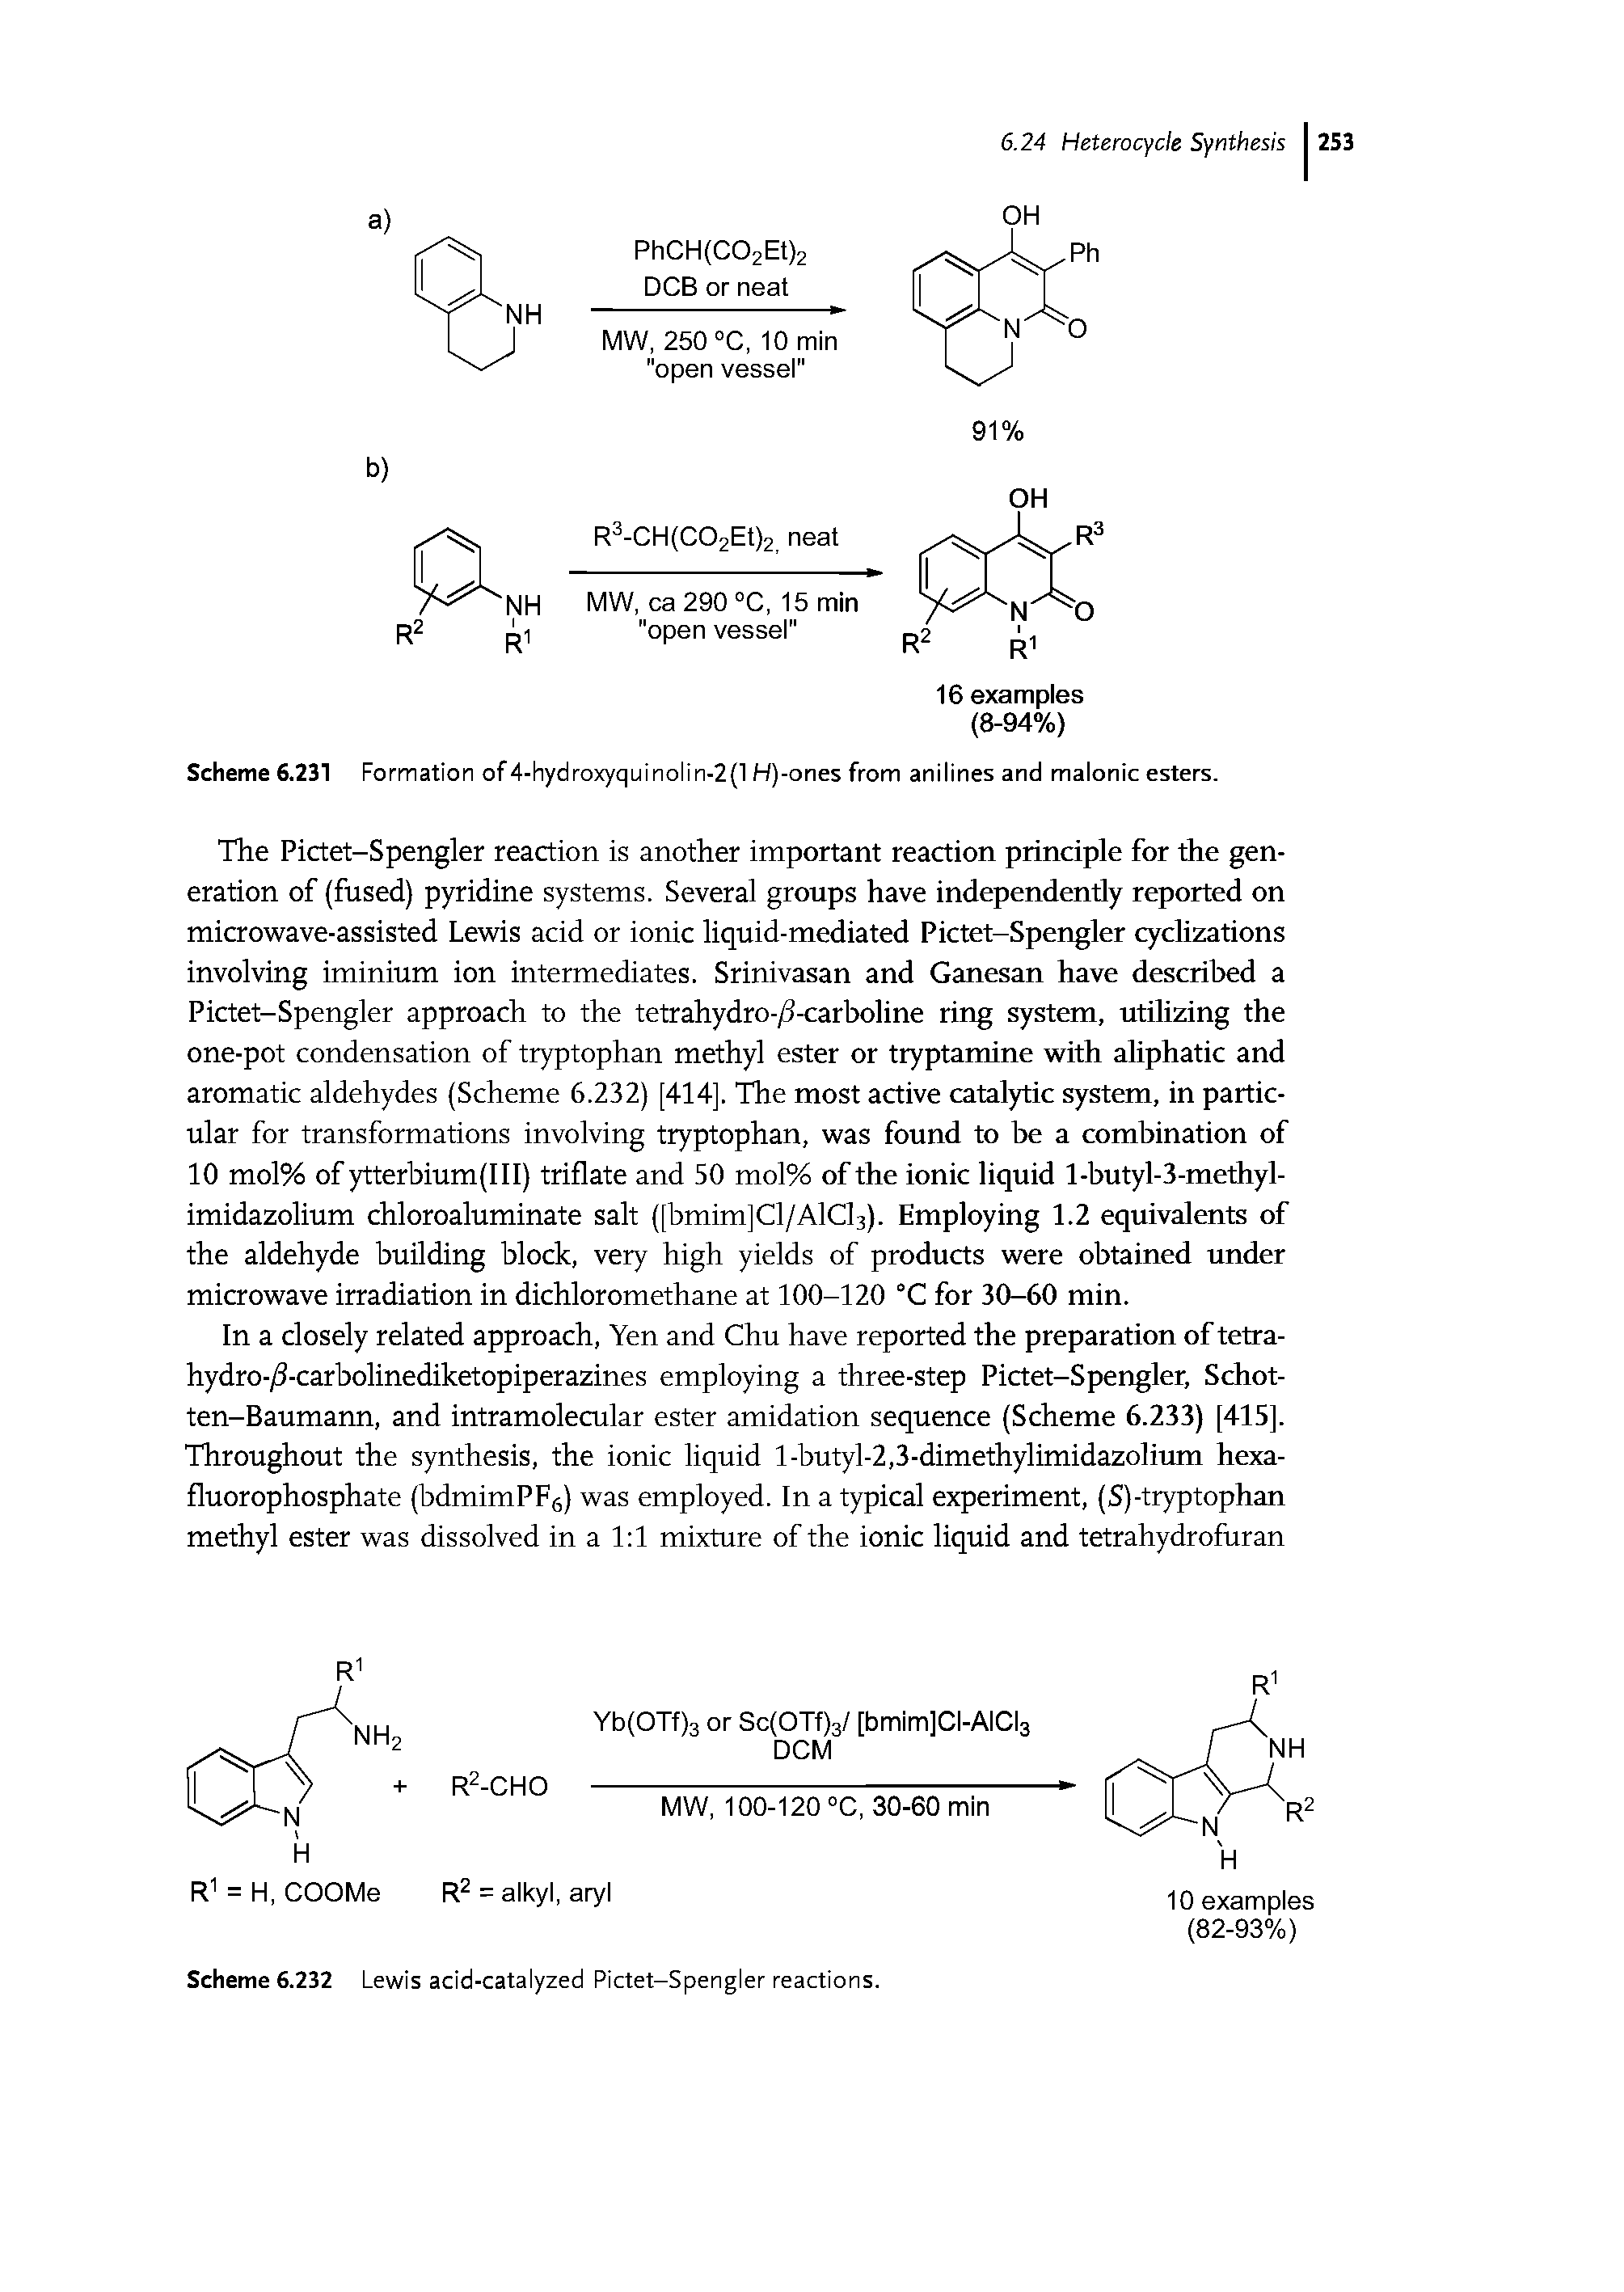 Scheme 6.232 Lewis acid-catalyzed Pictet-Spengler reactions.